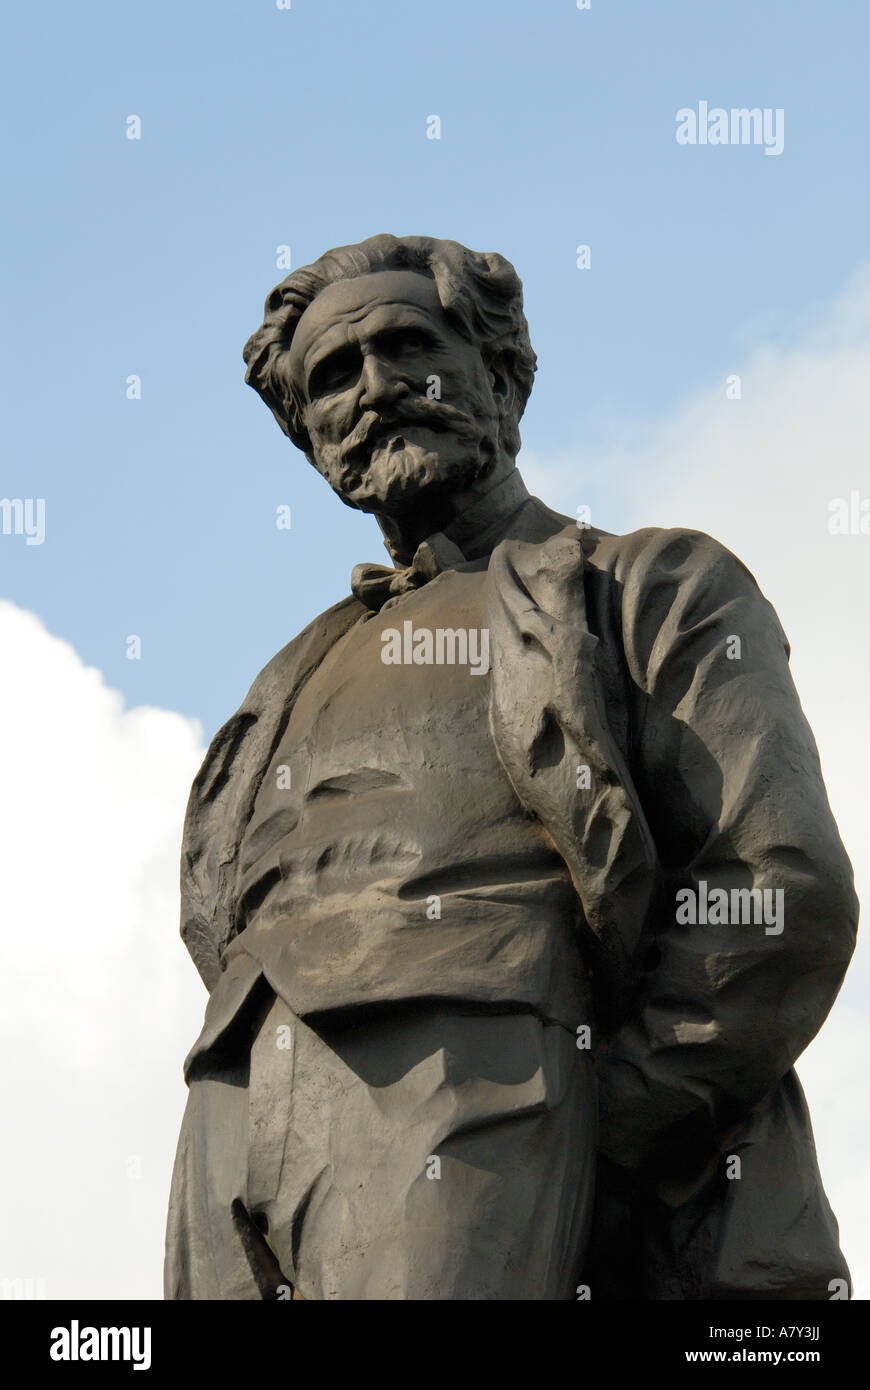 Italia, Milán, la estatua de Giuseppe Verdi Foto de stock